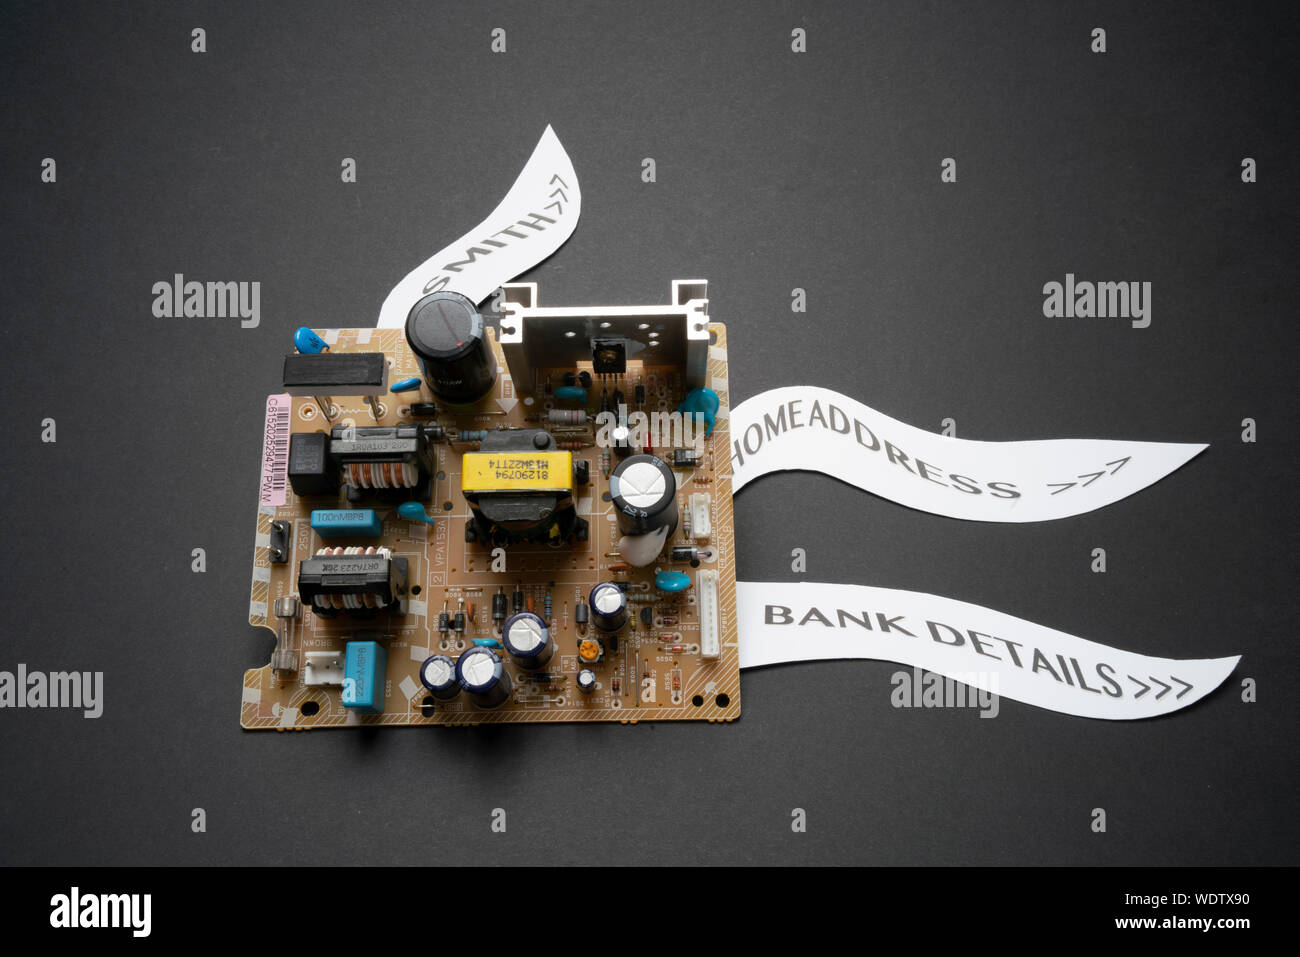 Un circuit imprimé avec des étiquettes illustration les fuites de données, les informations personnelles et le piratage informatique dans un grand monde d'entreposage de données Banque D'Images